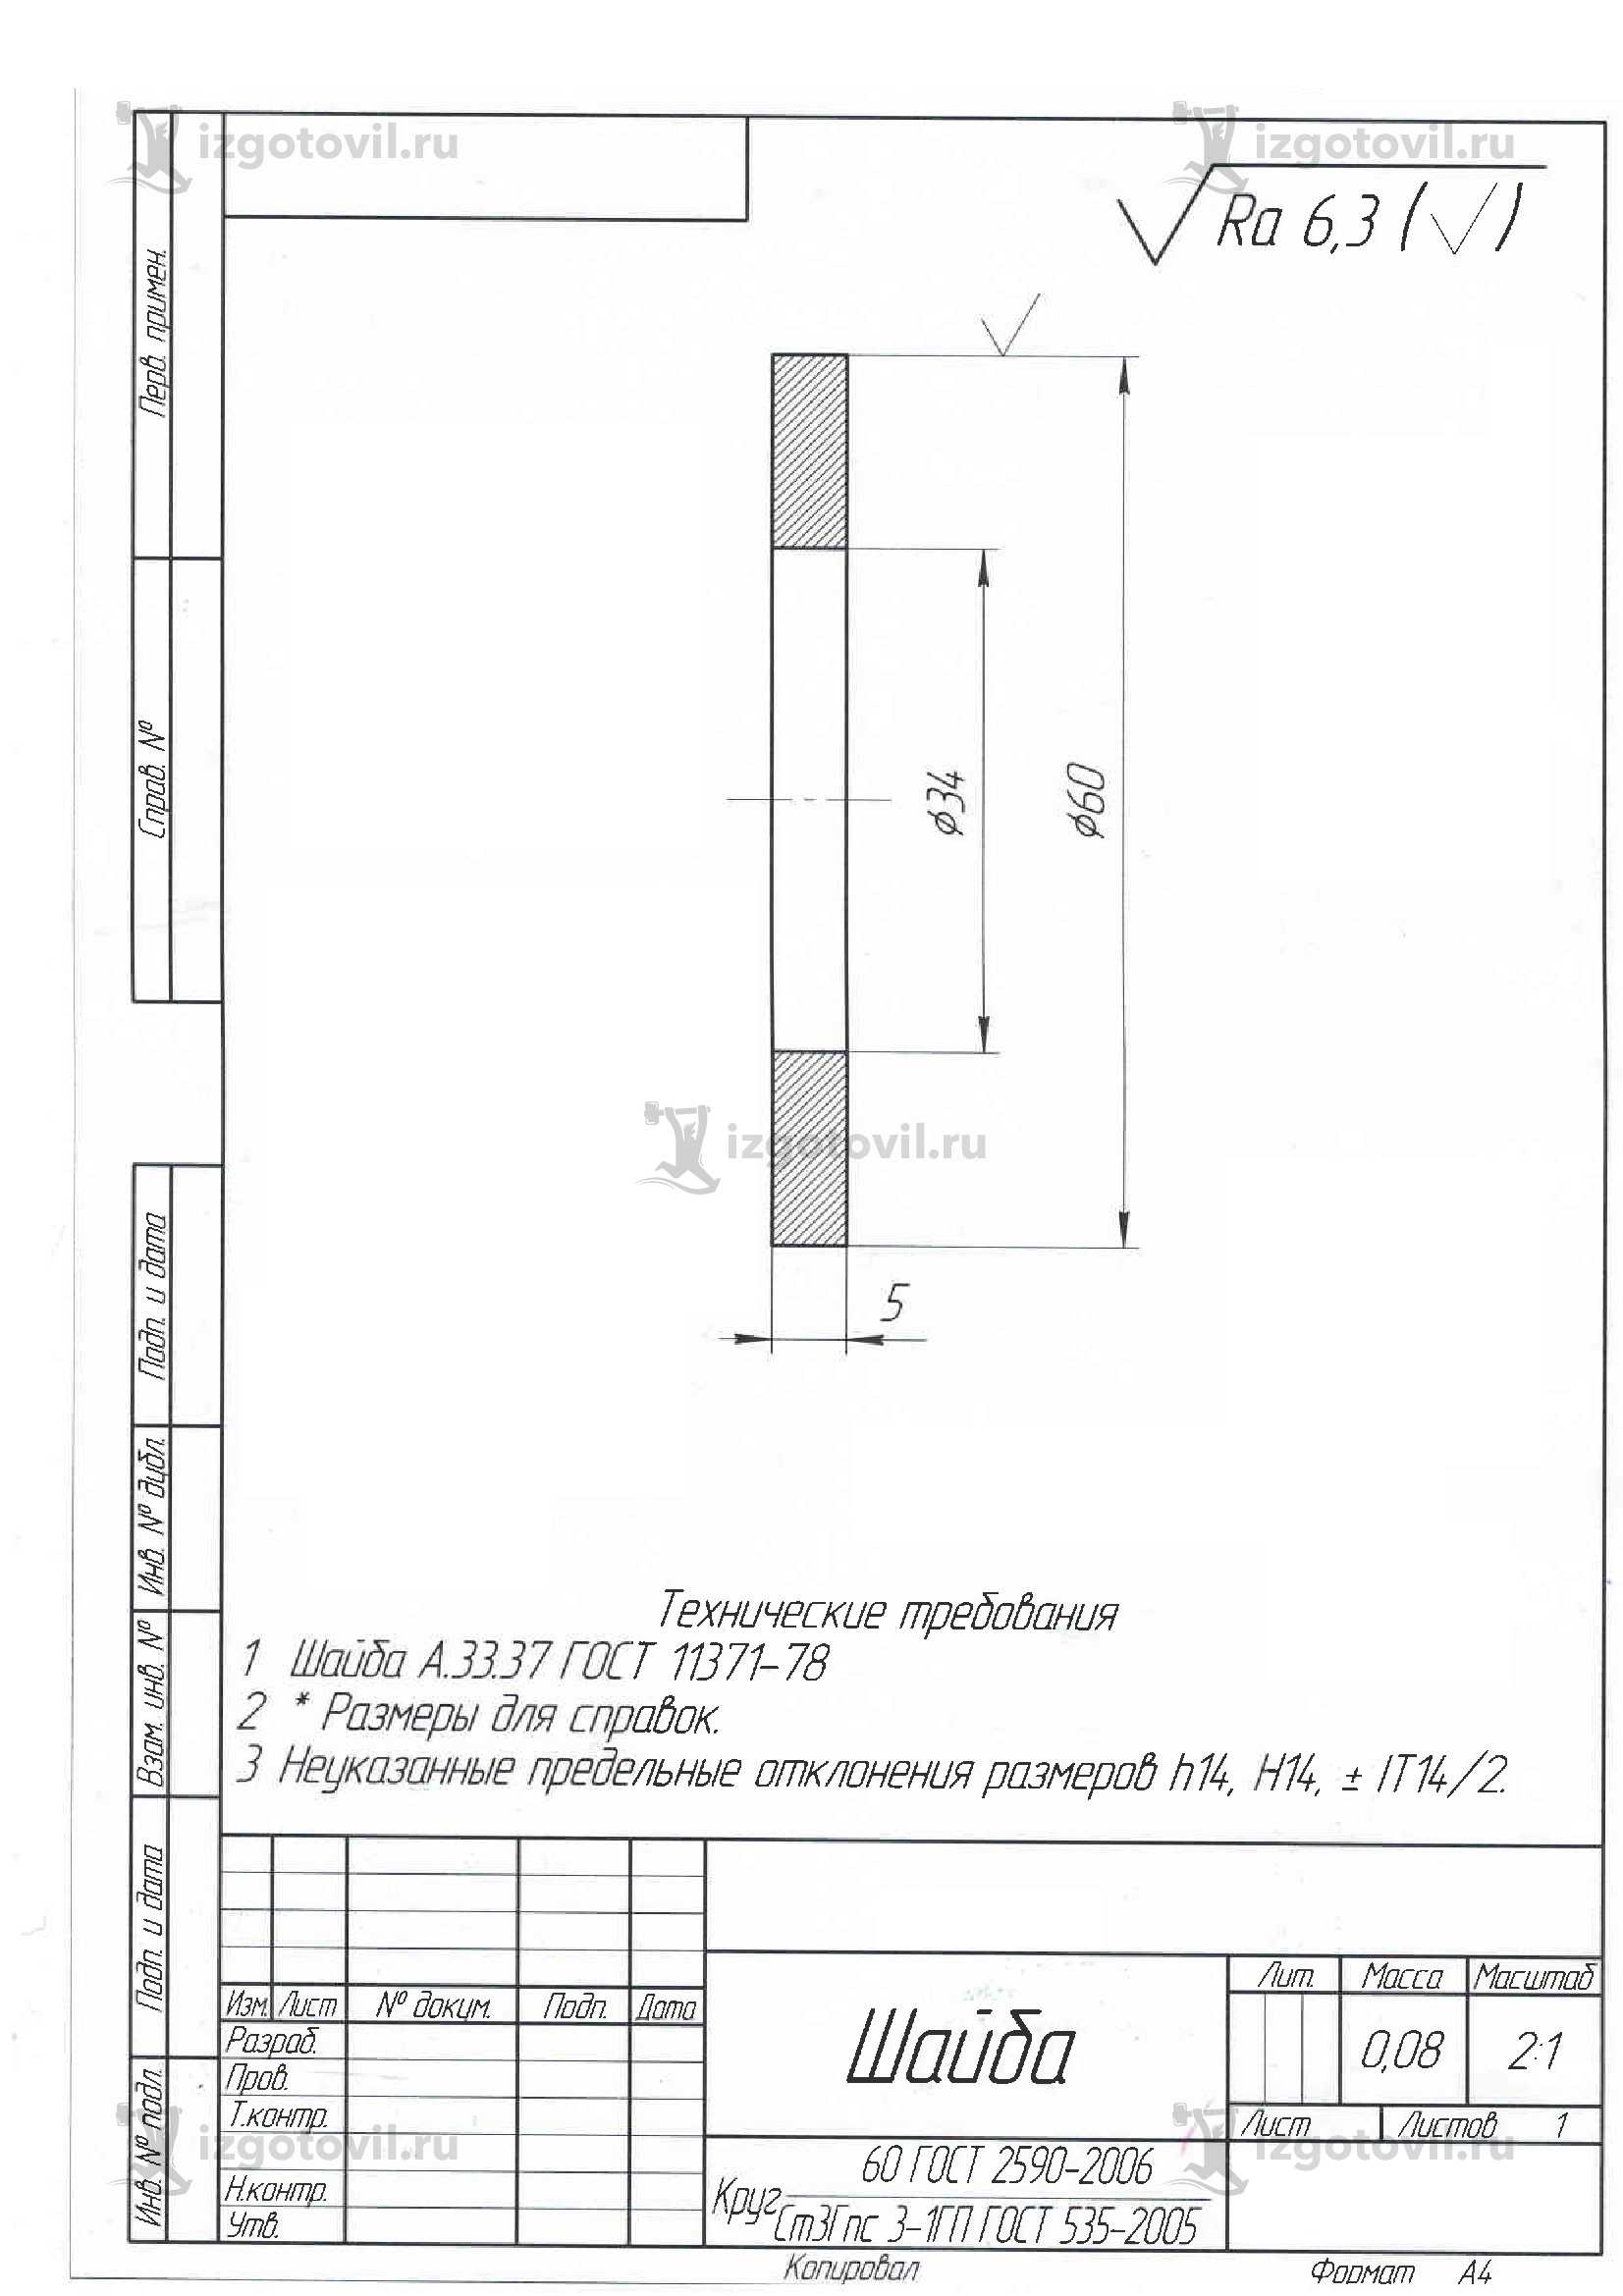 Токарно-фрезерная обработка: изготовление втулок, пальца, штифта и шайбы